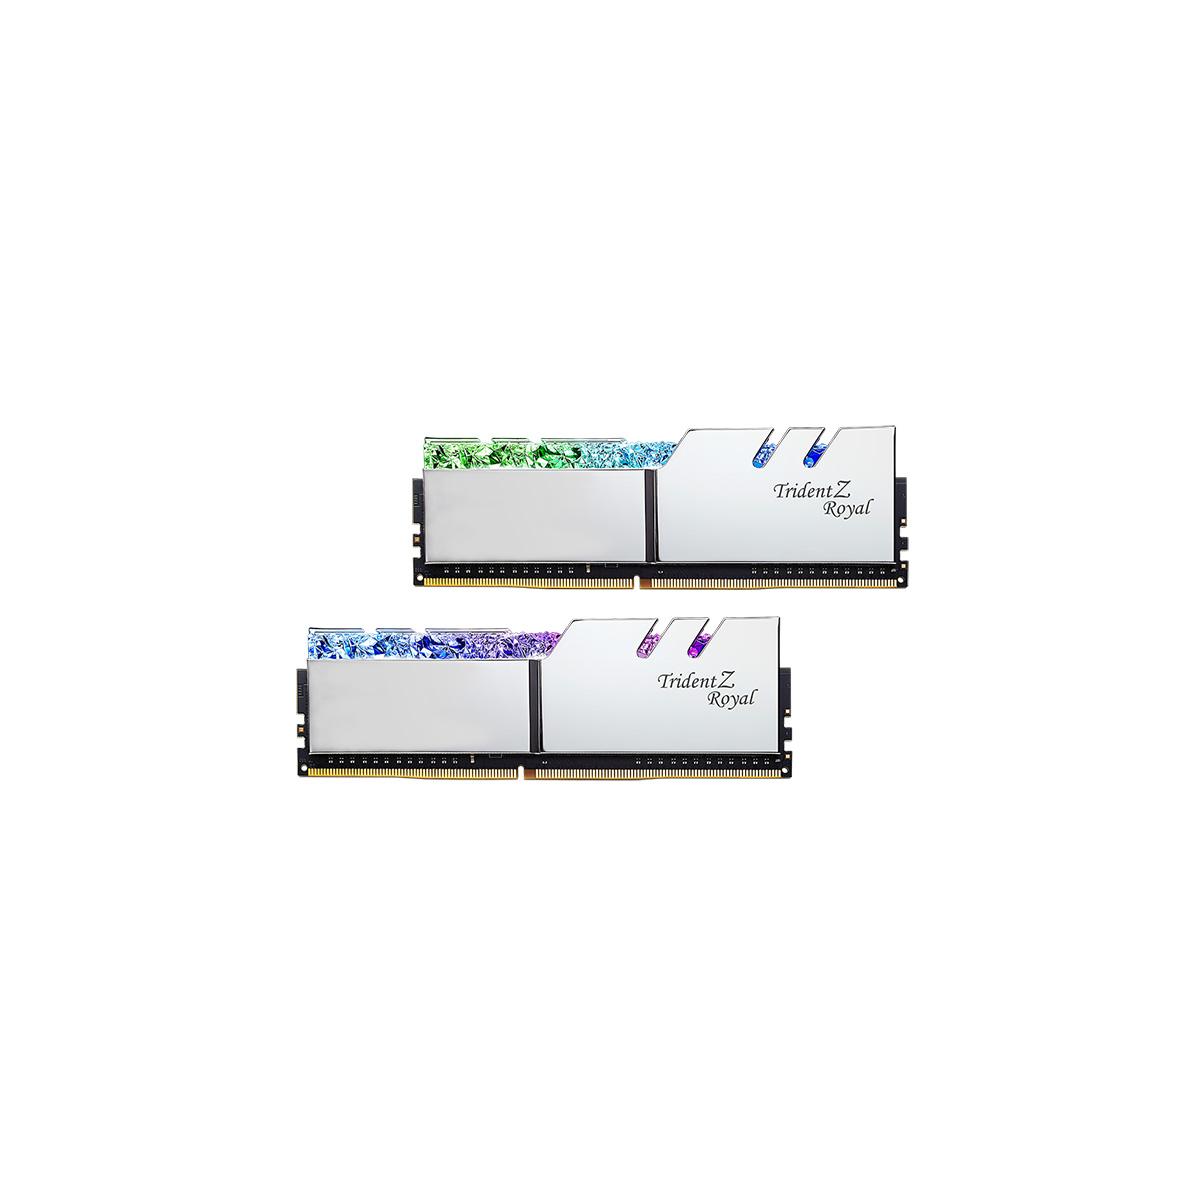 MEMORIA DIMM DDR4 G.SKILL (F4-4000C18D-64GTRS) 64GB (2X32GB) 4000 MHZ, TRIDENT ROYAL SILVER - F4-4000C18D-64GTRS